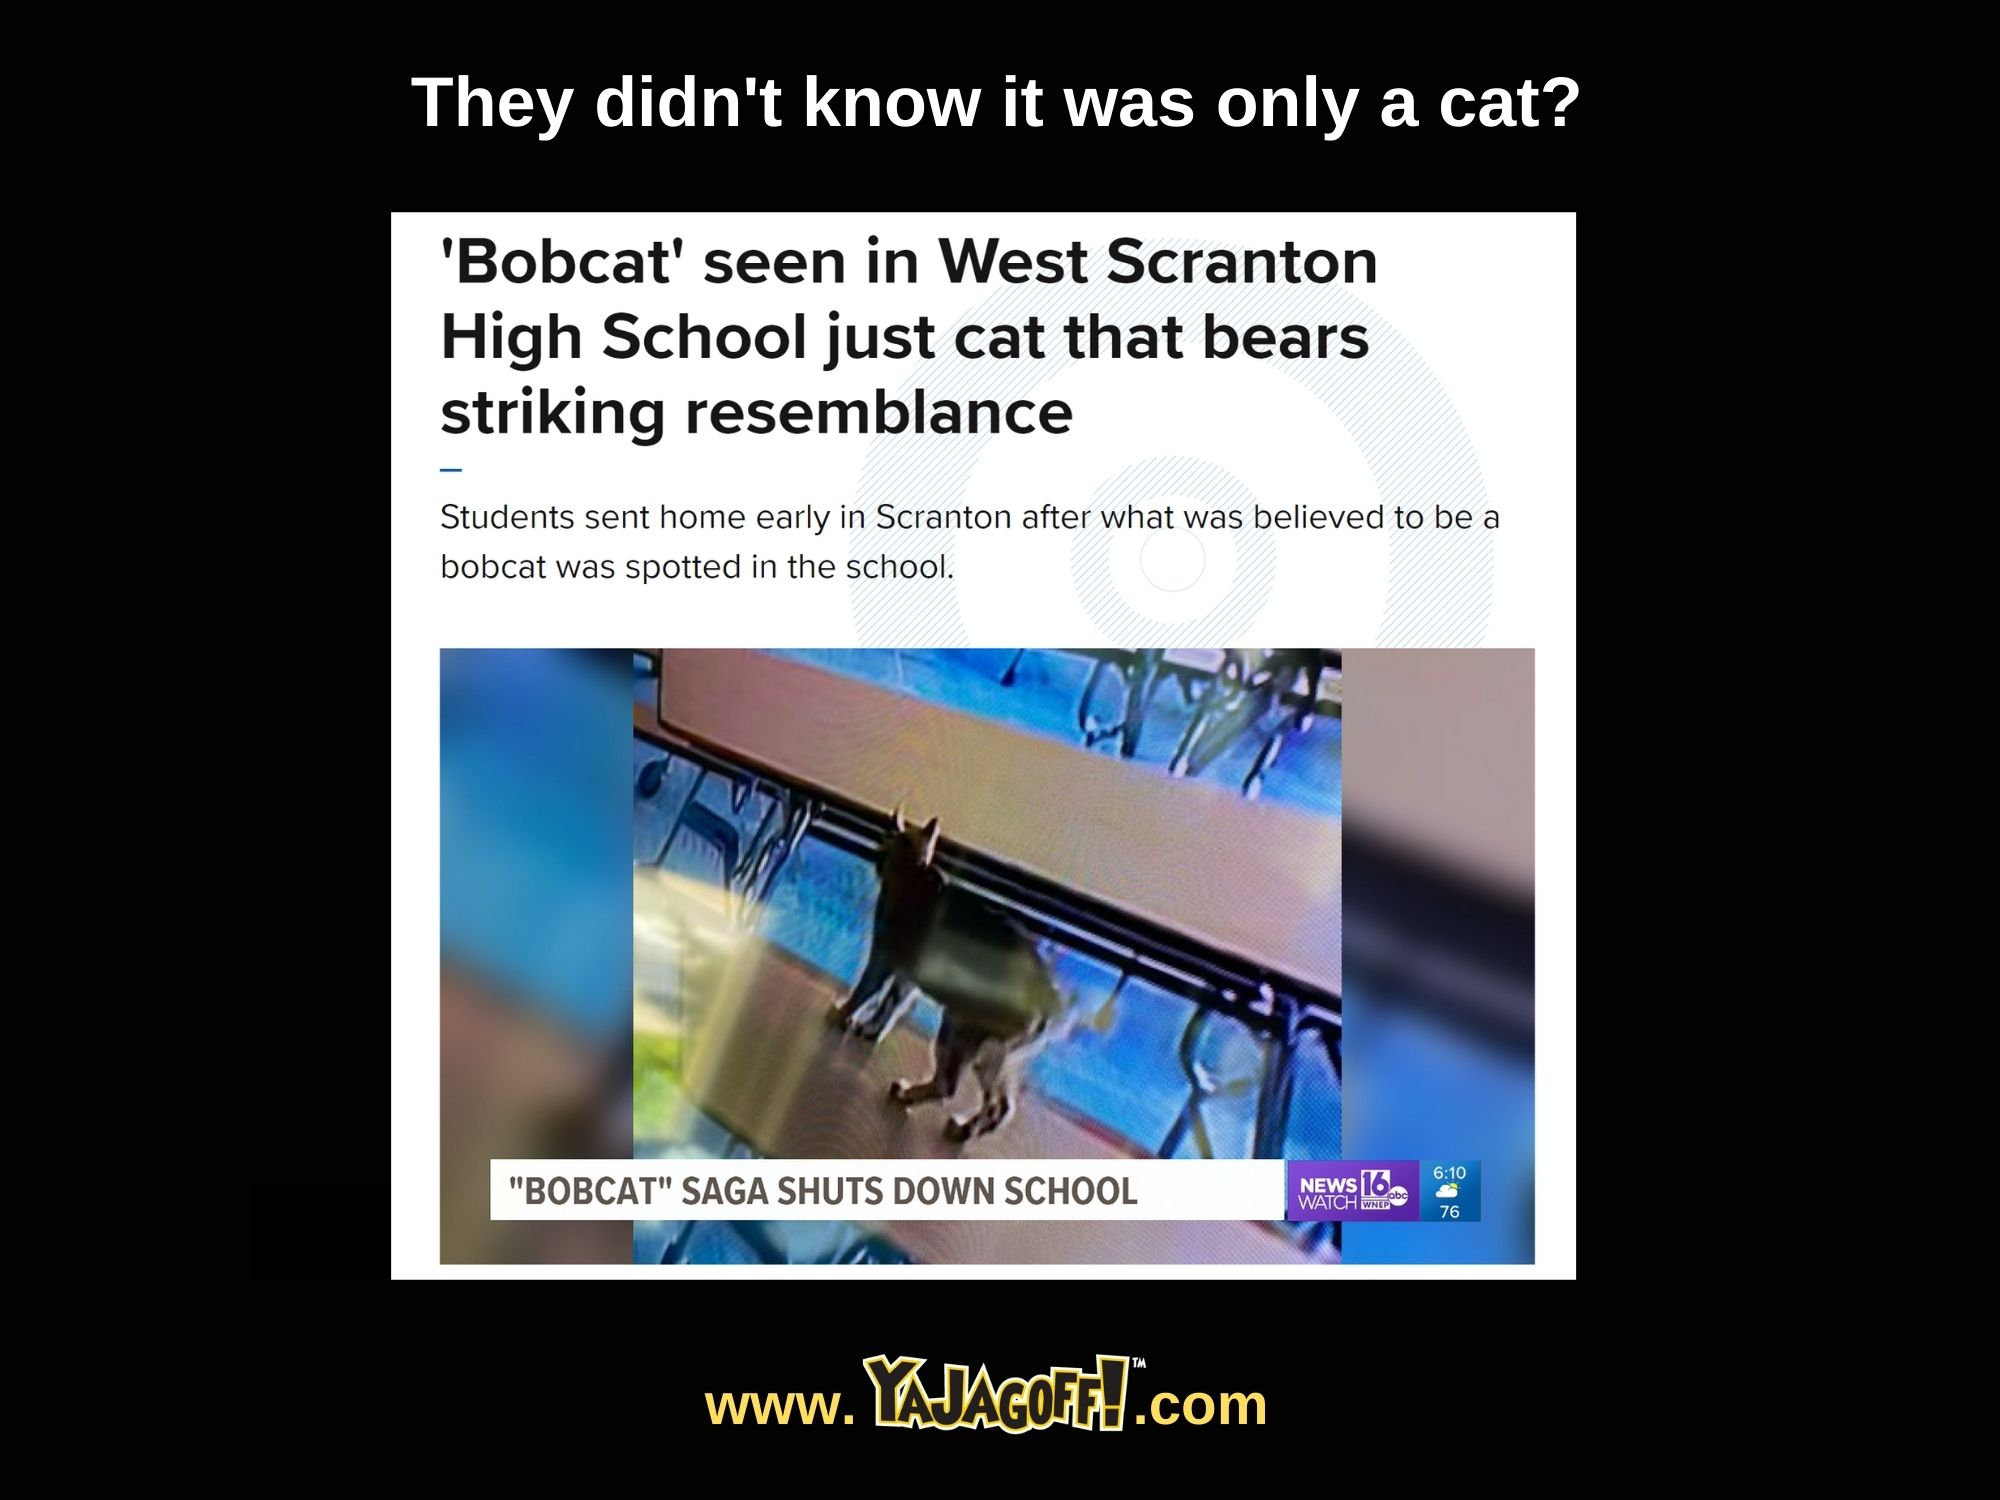 Bobcat' seen in West Scranton High School just cat